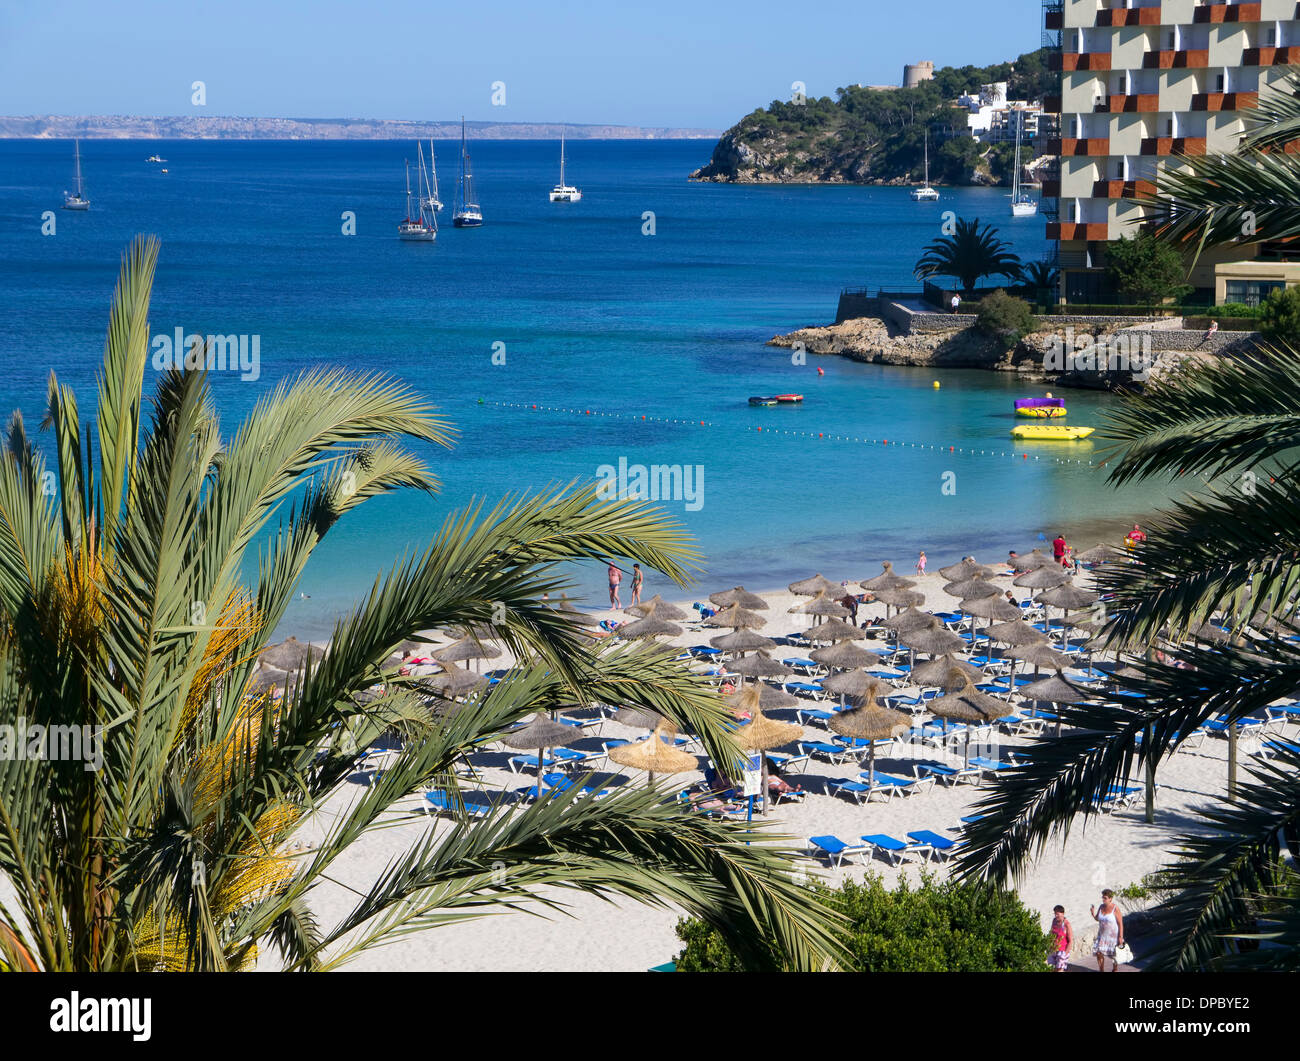 Seaview from the beach front hotel in Palma Nova Majorca Spain Stock Photo